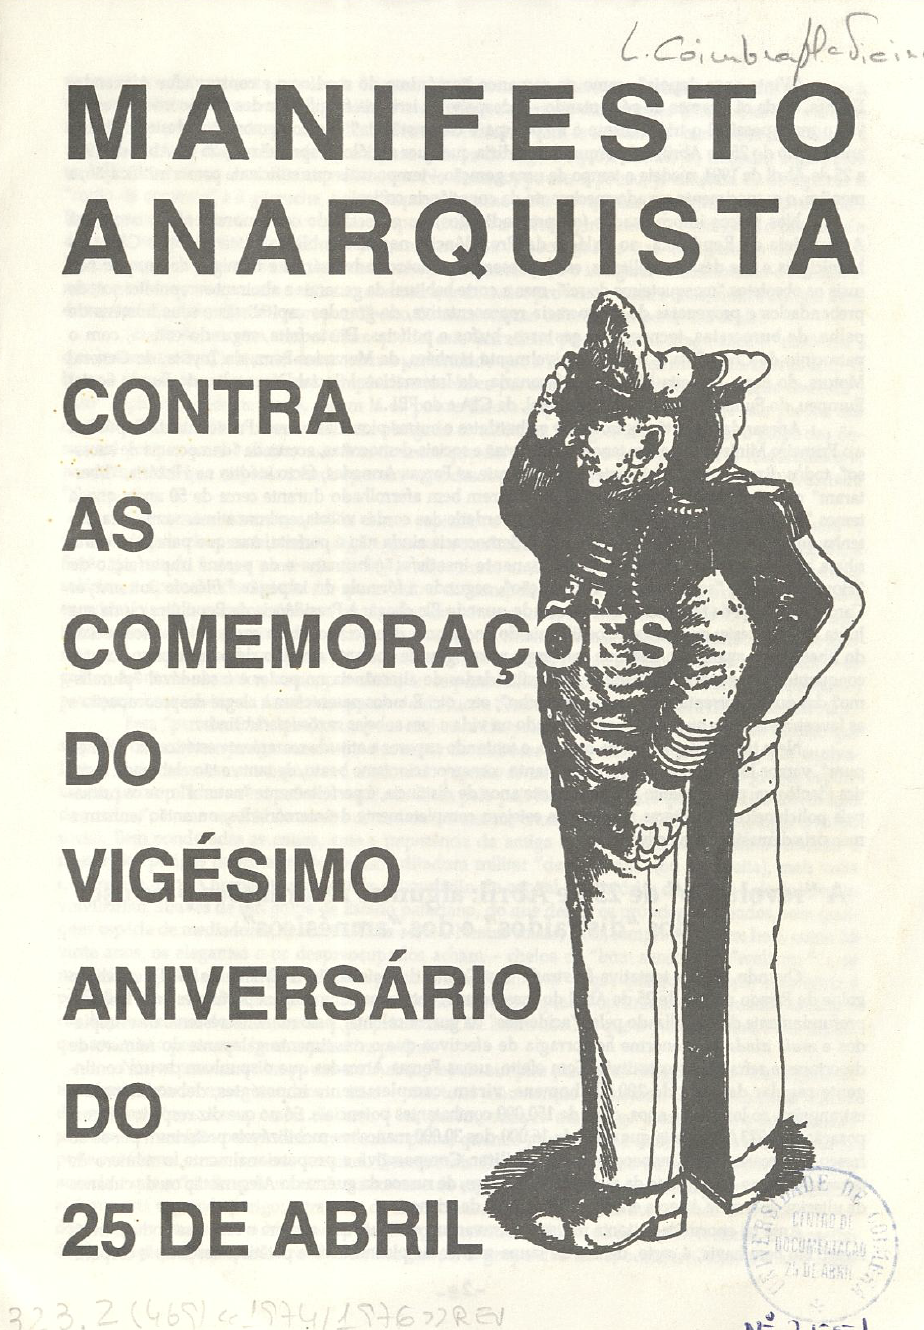 Manifesto Anarquista Contra as Comemorações do Vigésimo Aniversário do 25 de Abril